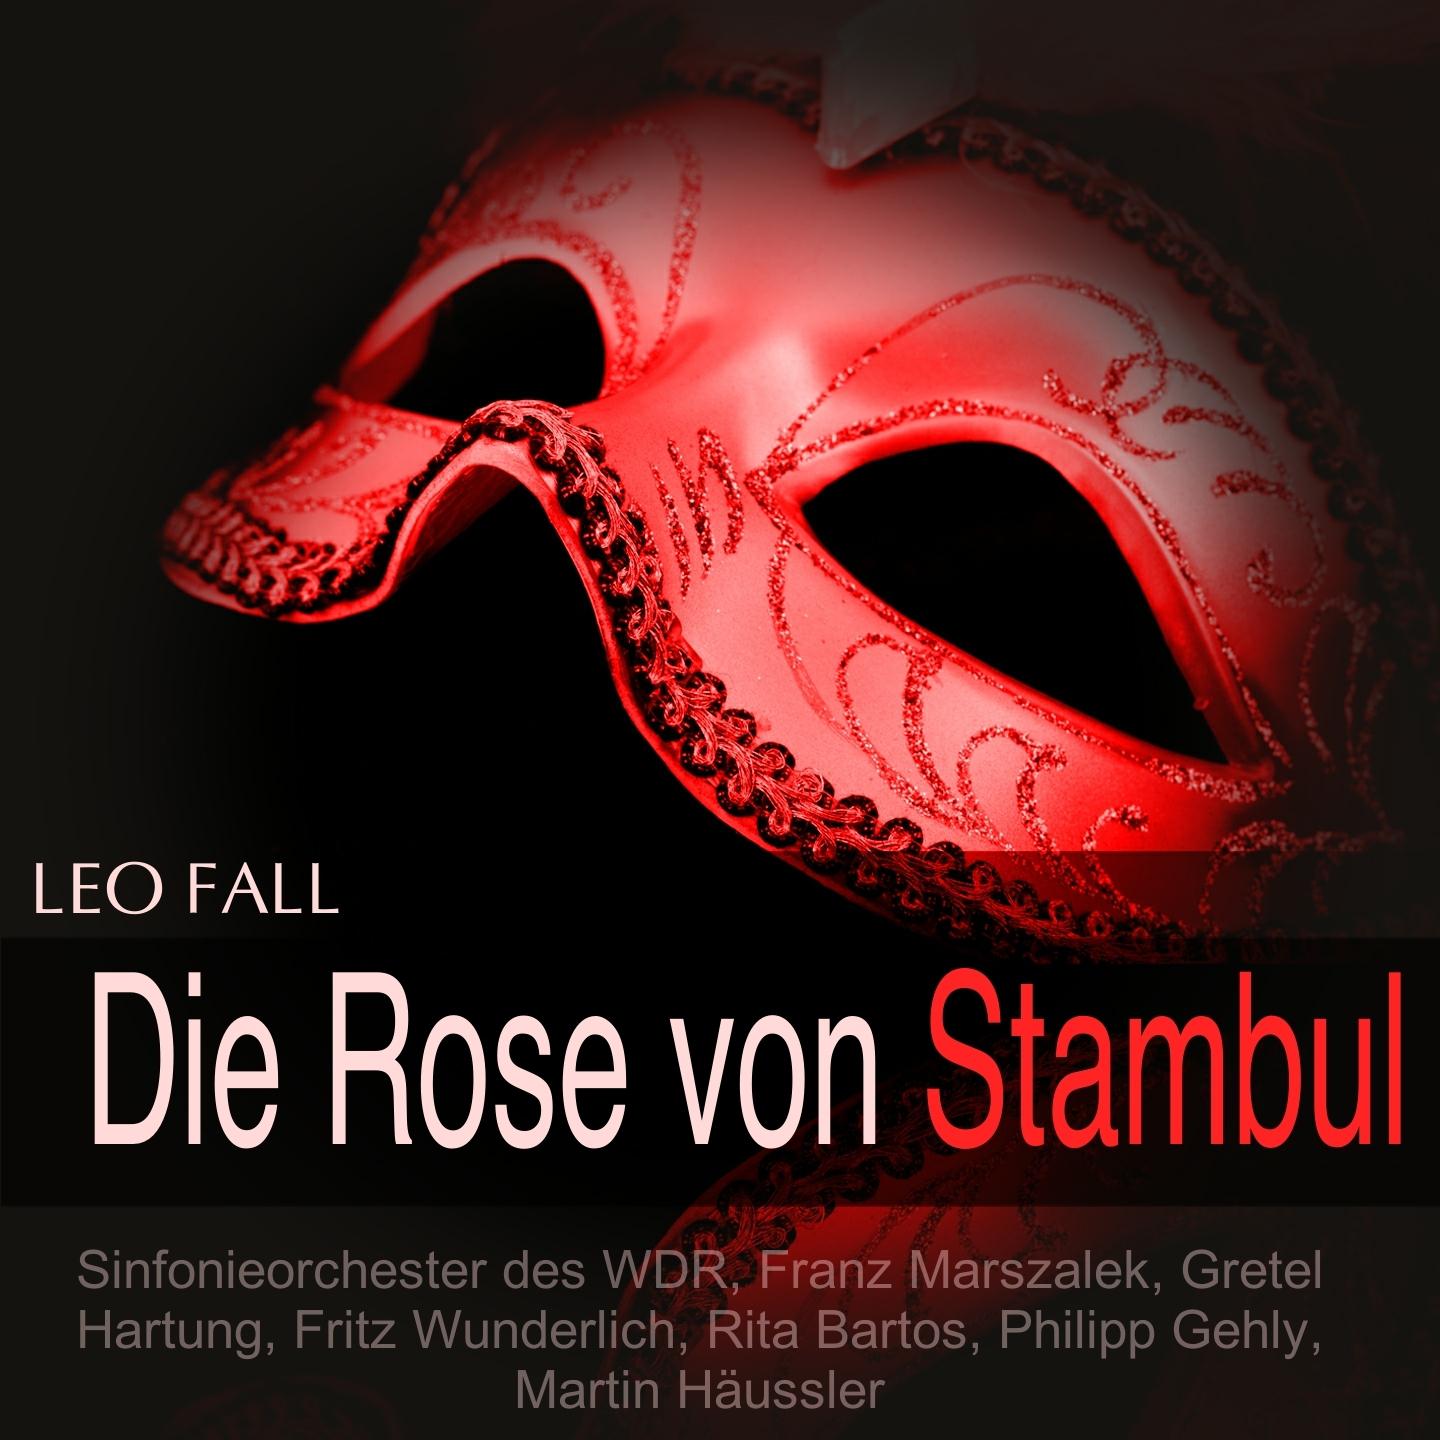 Die Rose von Stambul, Act III: "Schau Papchen" - "Opapa, mein lieber" (Midili, Fridolin, Gruber)